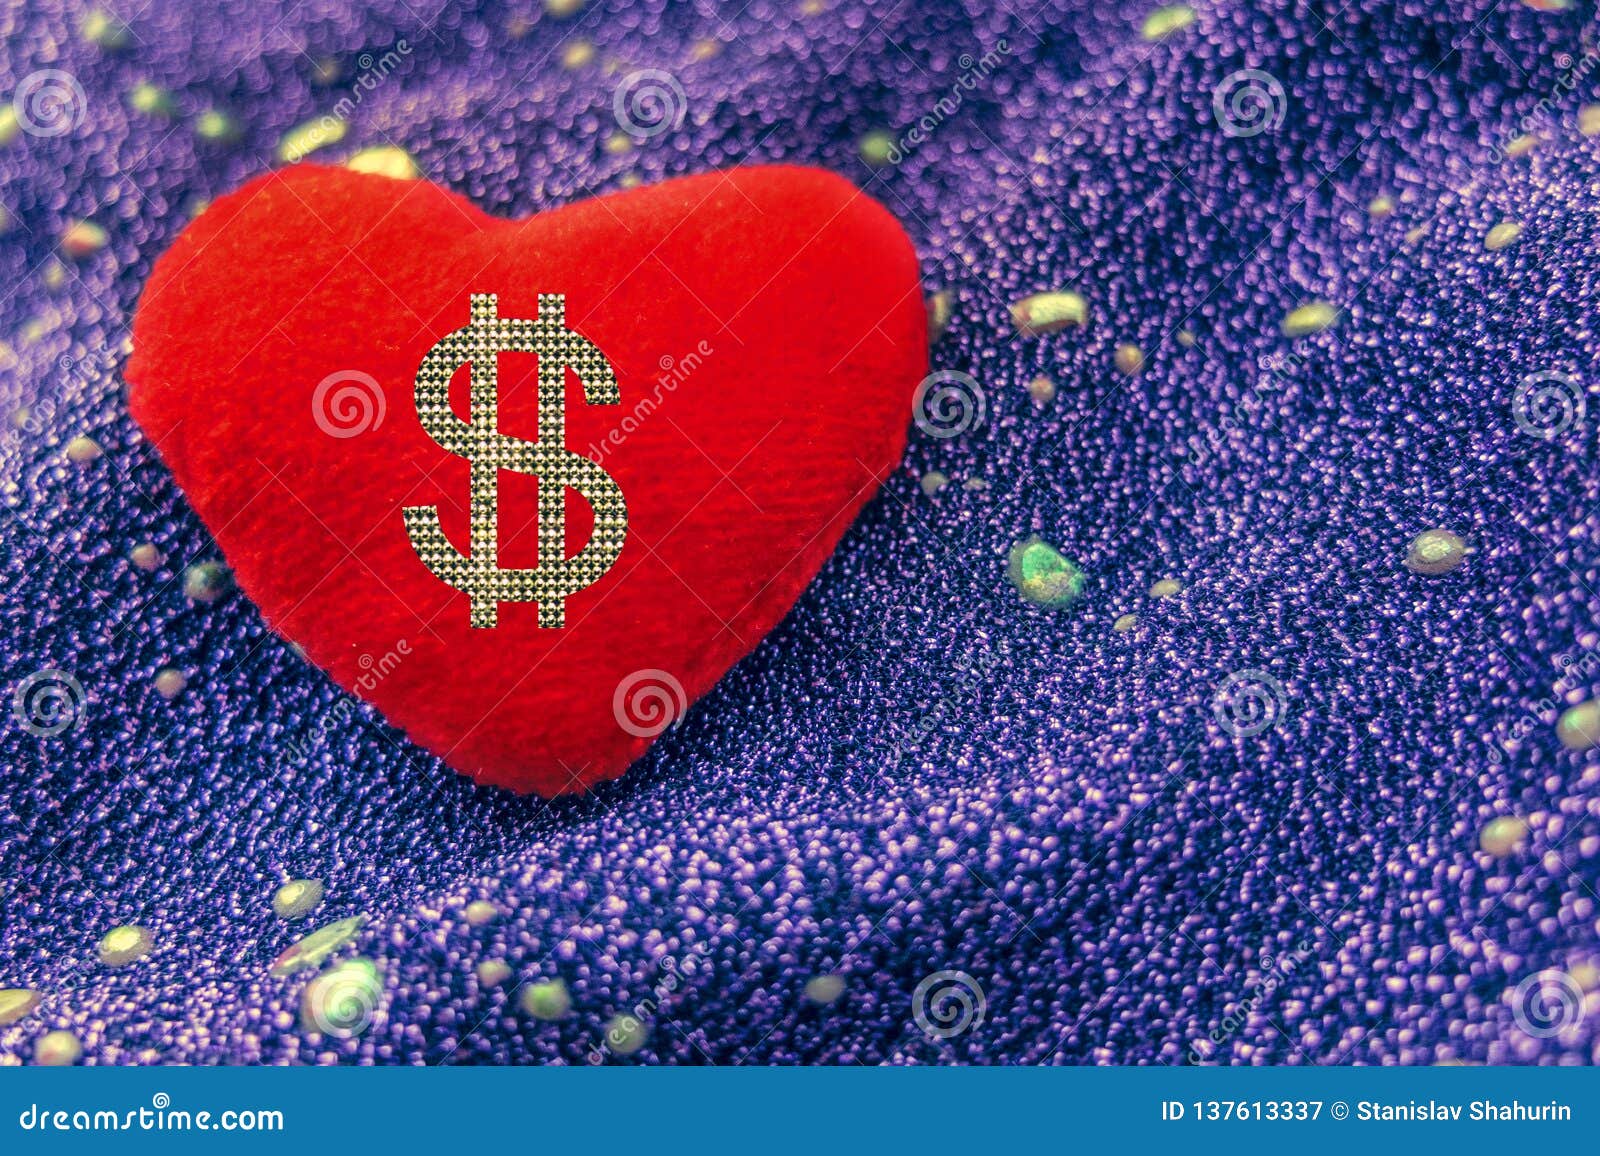 Liebe oder Geld Zeichendollar auf rotem Herzen. Zeichendollar auf rotem Herzen auf Neon-backgrond Liebe oder Geld